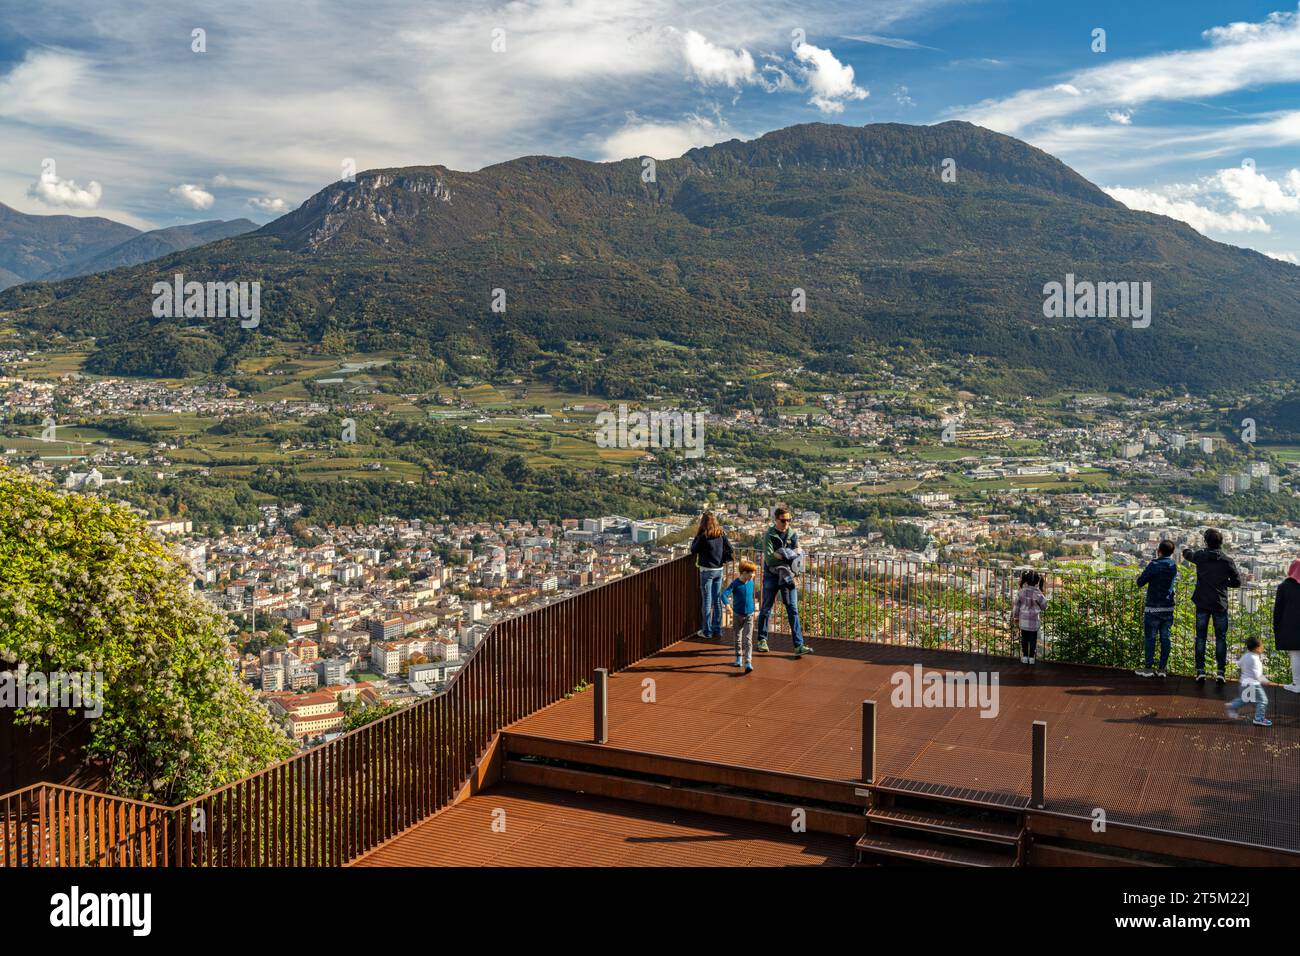 Die Aussichtsplatform Terrazza Panoramica Busa Degli Orsi im Stadtteil Sardagna mit Blick auf trient und die Gebirgslandschaft des Trentino, trient, Banque D'Images